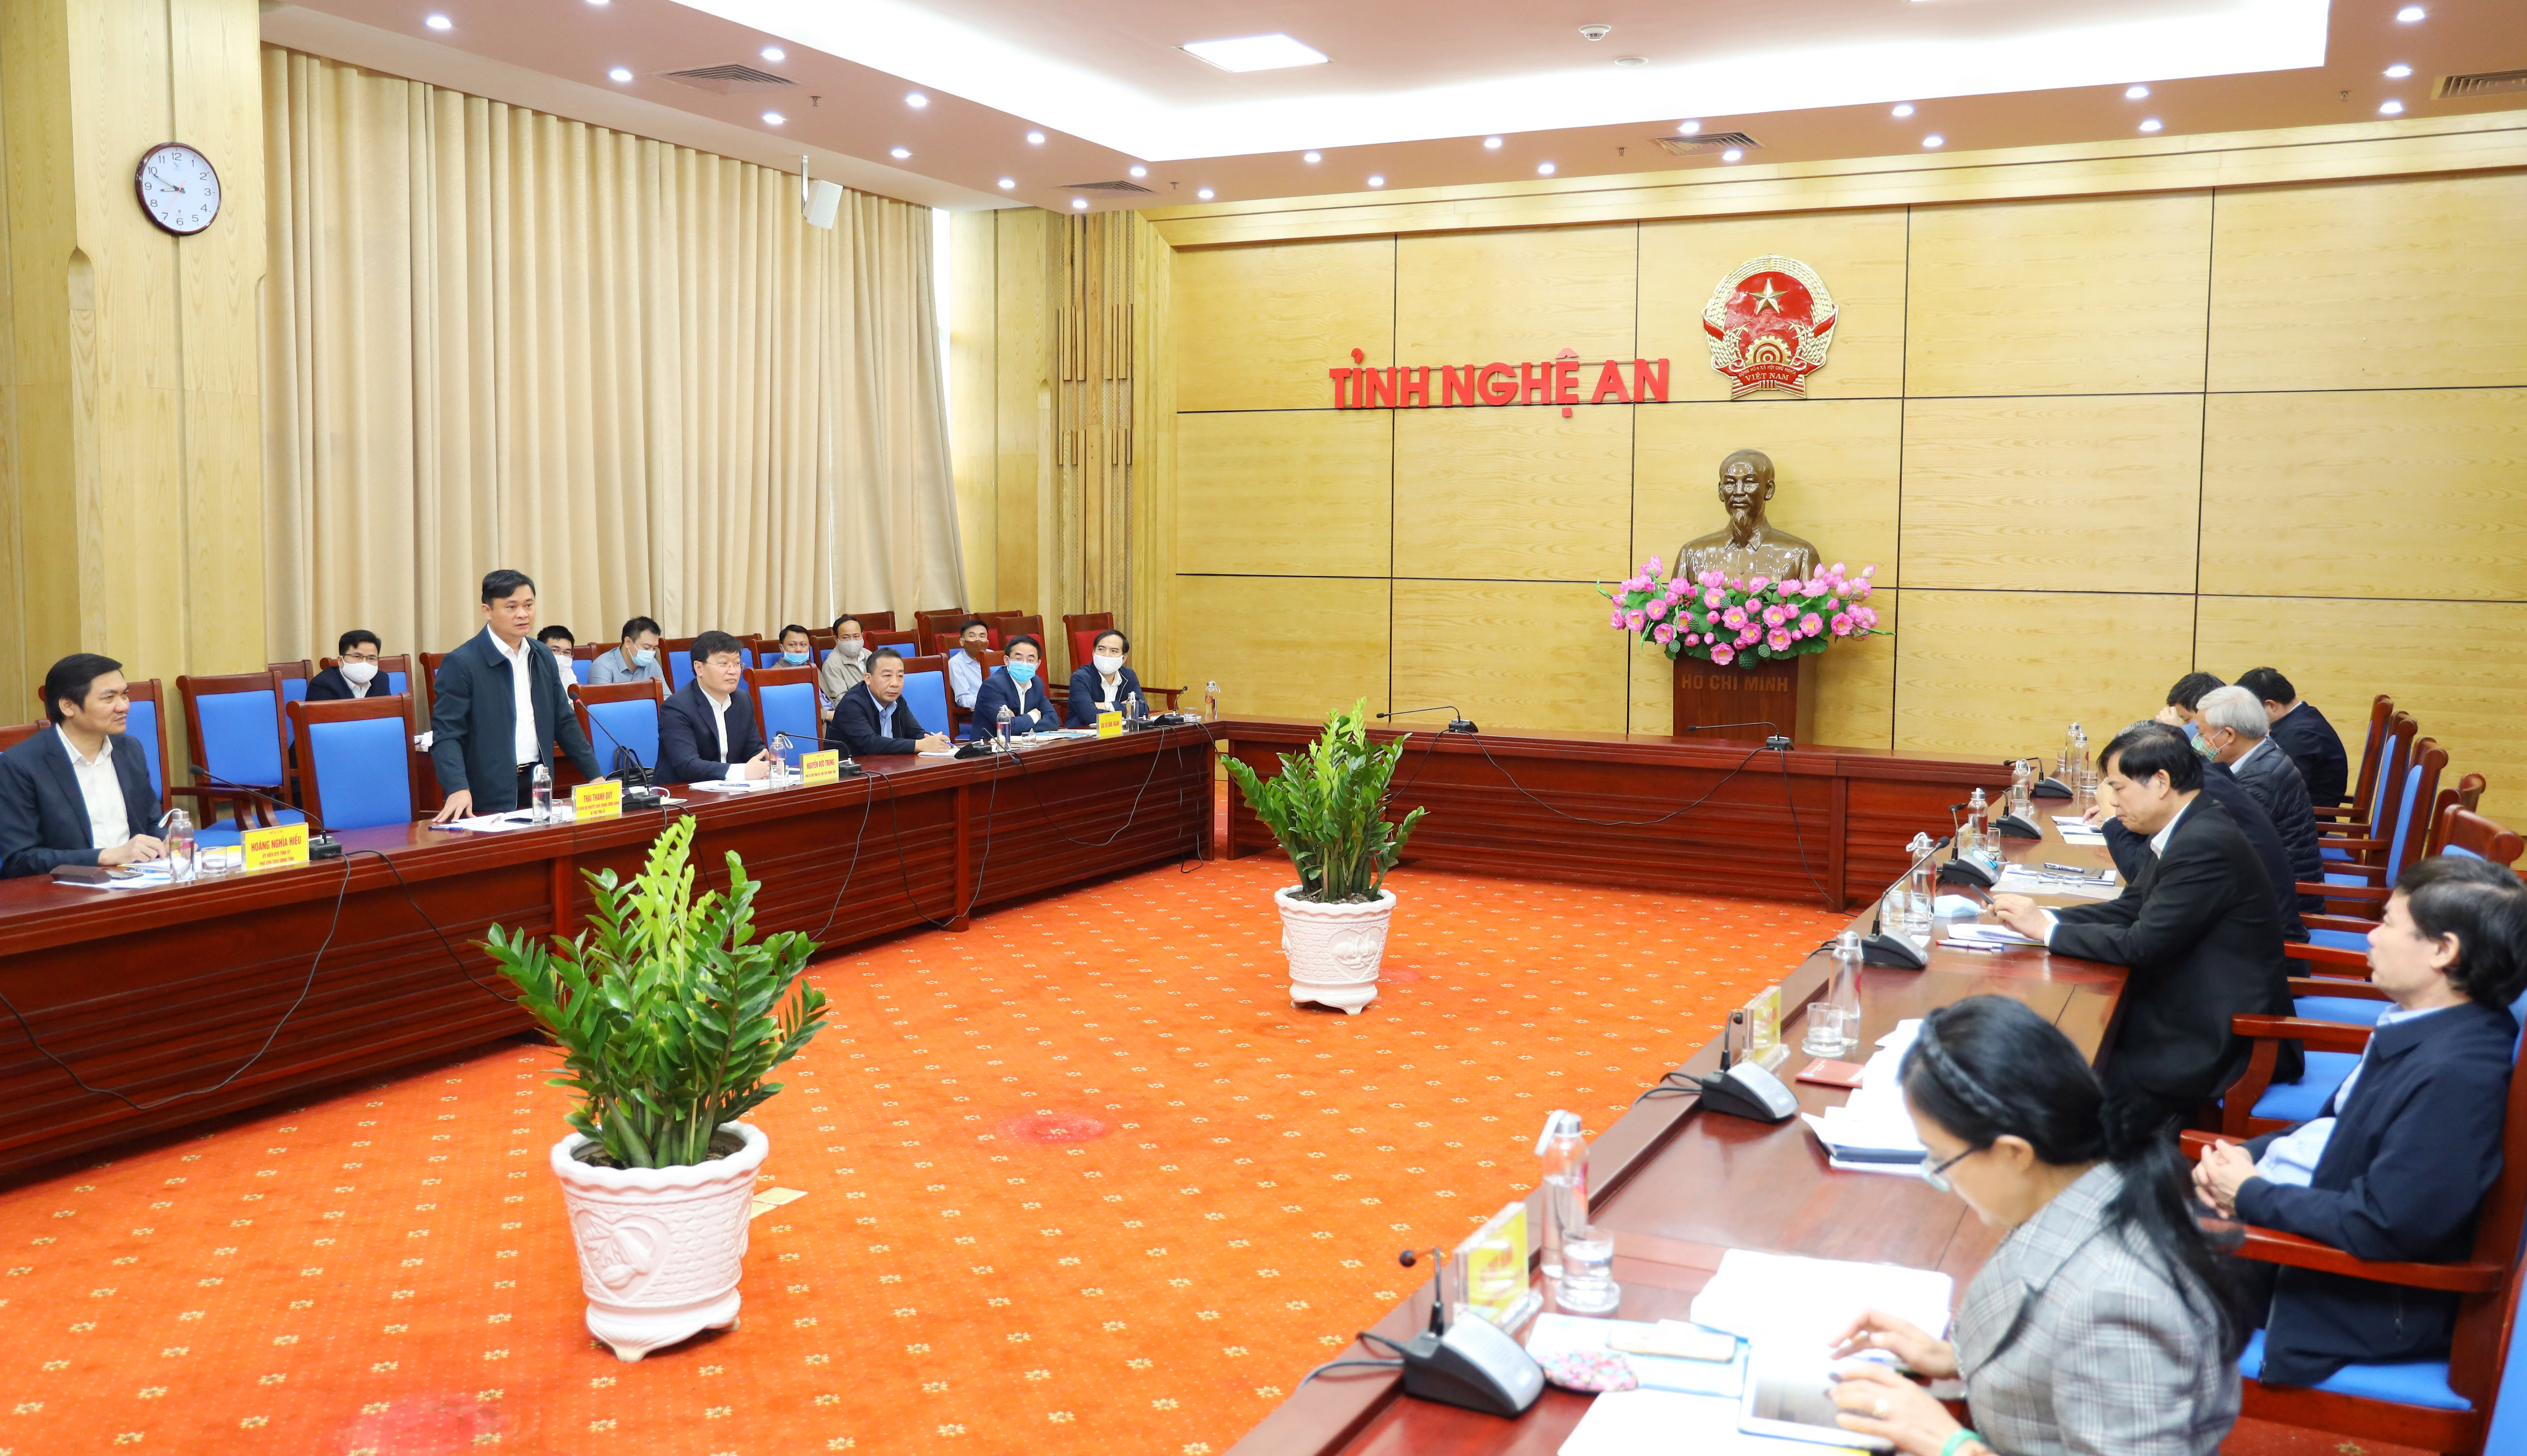 Toàn cảnh cuộc làm việc giữa Bộ trưởng Bộ NN&PTNT với lãnh đạo tỉnh Nghệ An. Ảnh Nguyên Sơn